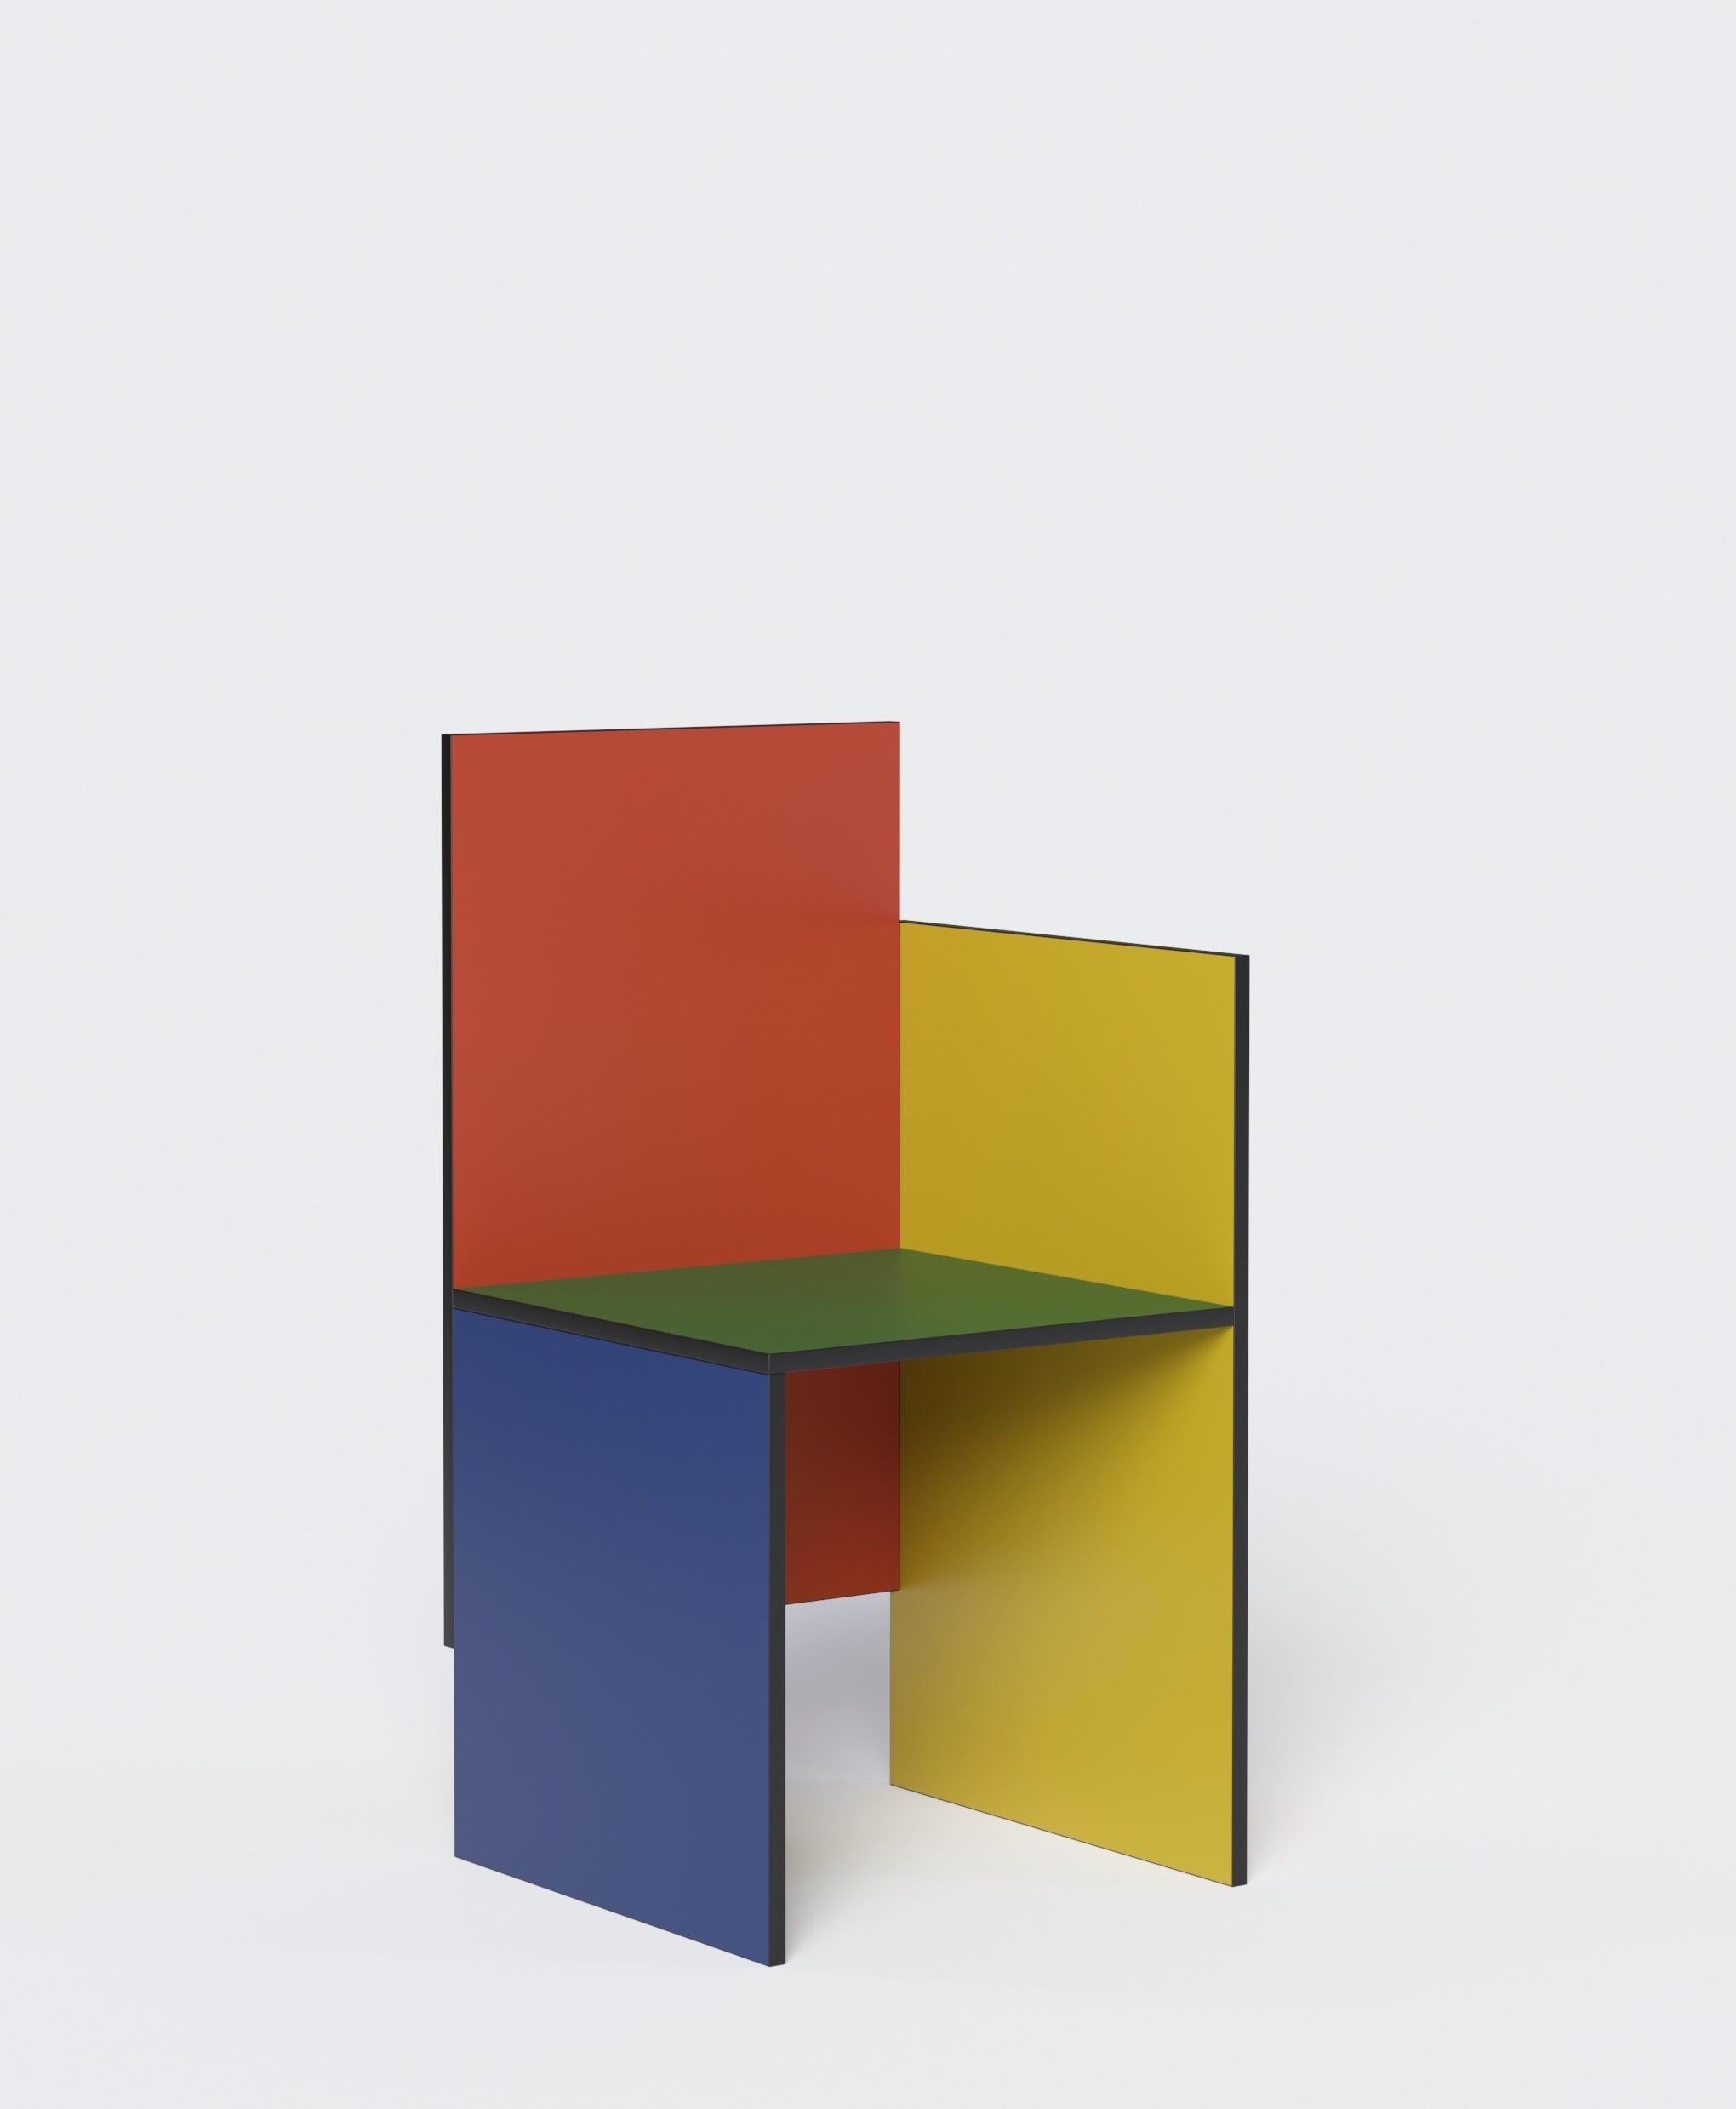 Geometrischer und minimalistischer Stuhl des russischen Designers Dmitry Samygin. Inspiriert von Gerrit Rietveld und dem Bauhaus-Stil. 

Sperrholz
Maße: 88.5 x 45 x 45 cm

Wählen Sie Ihre Farbe! 

Zwei Versionen:
- Ein Arm (rechts oder